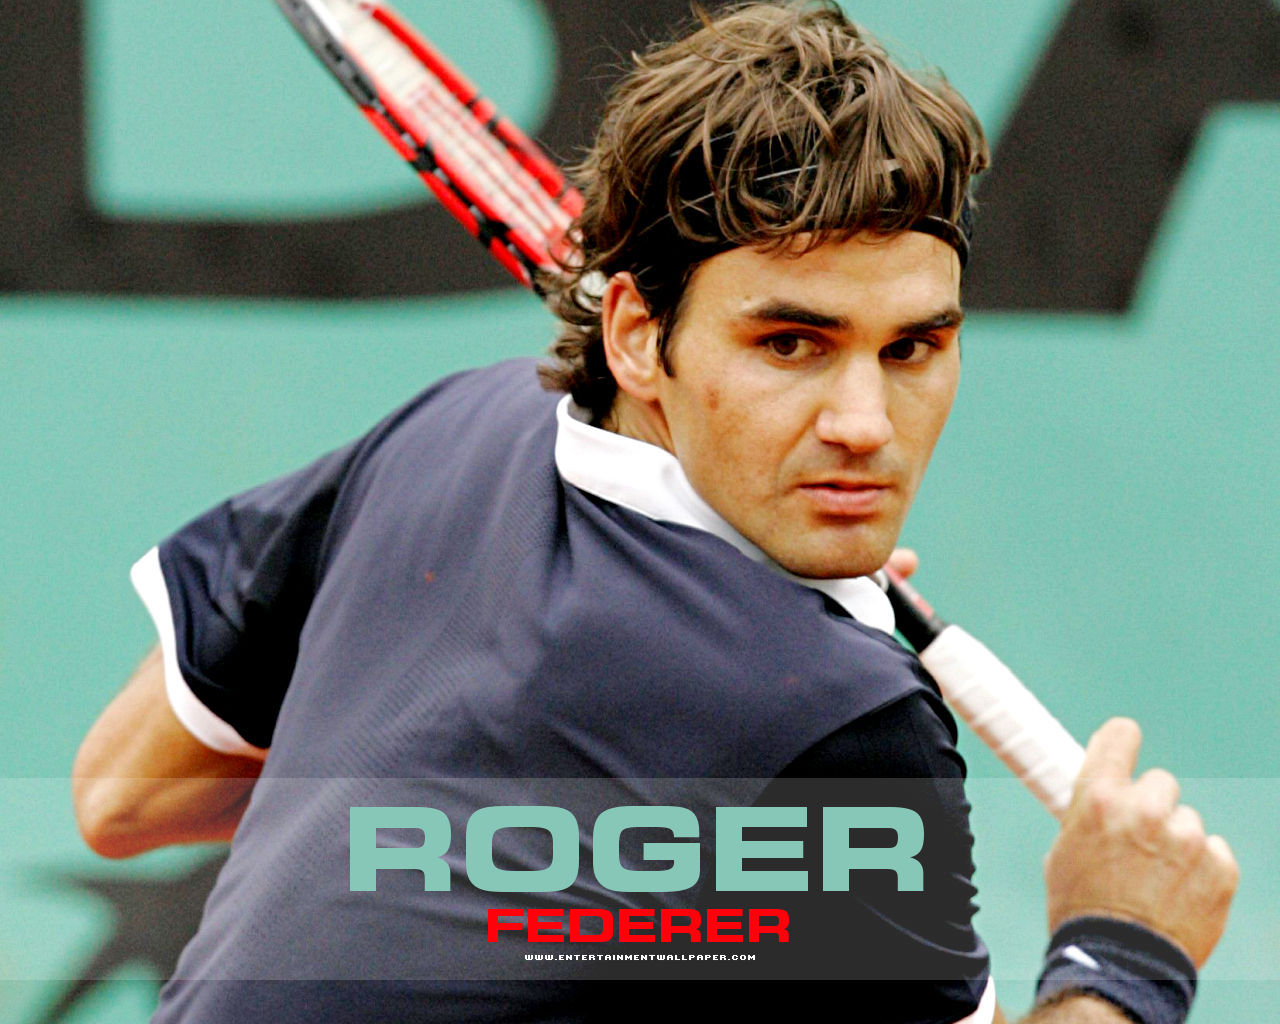 Michael Jordan: Roger Federer wallpaper 2011